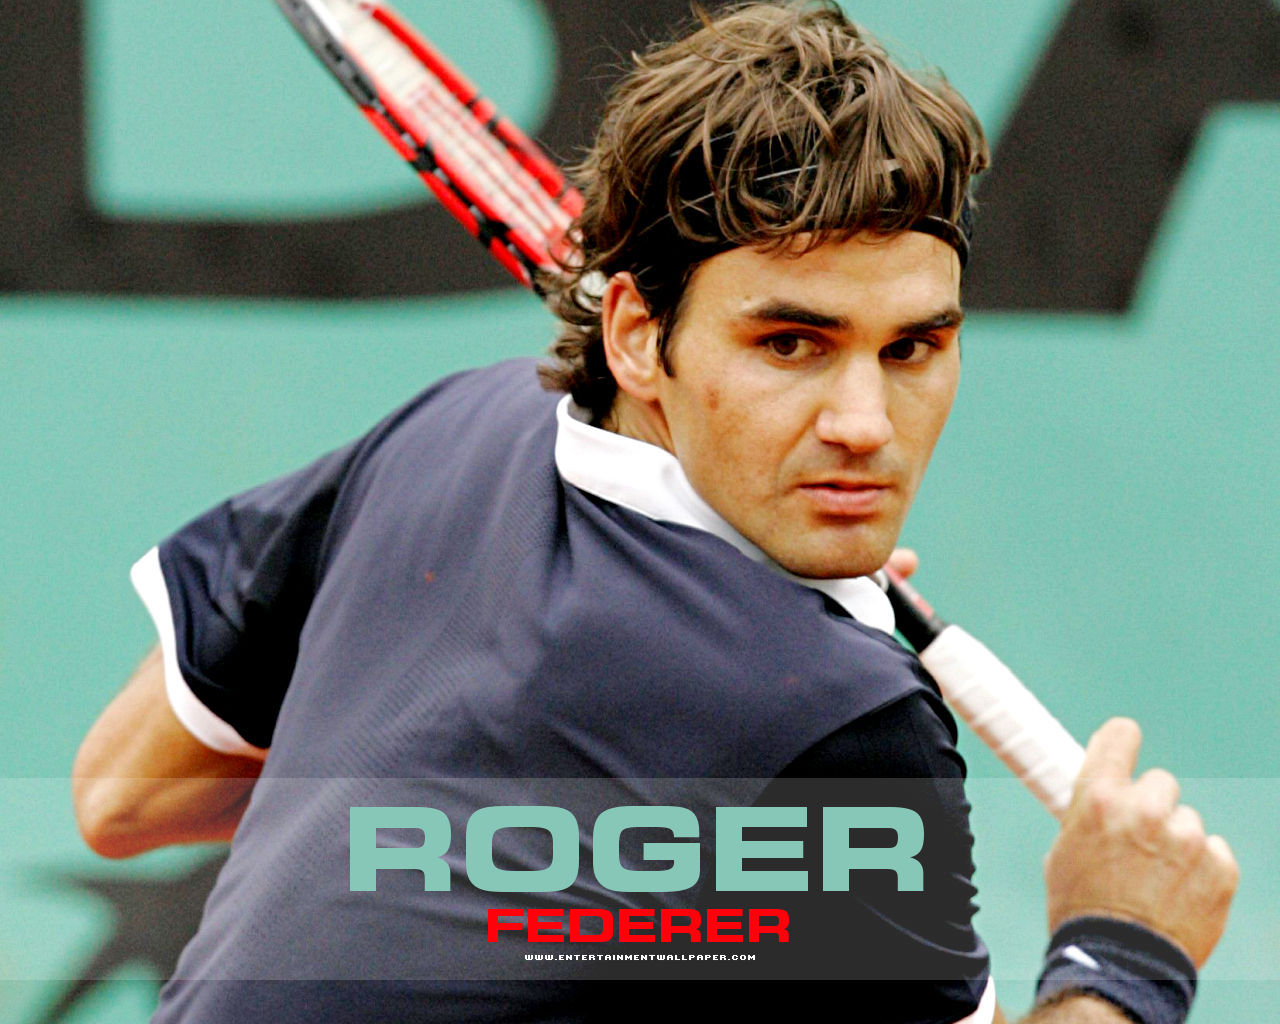 Michael Jordan: Roger Federer wallpaper 2011